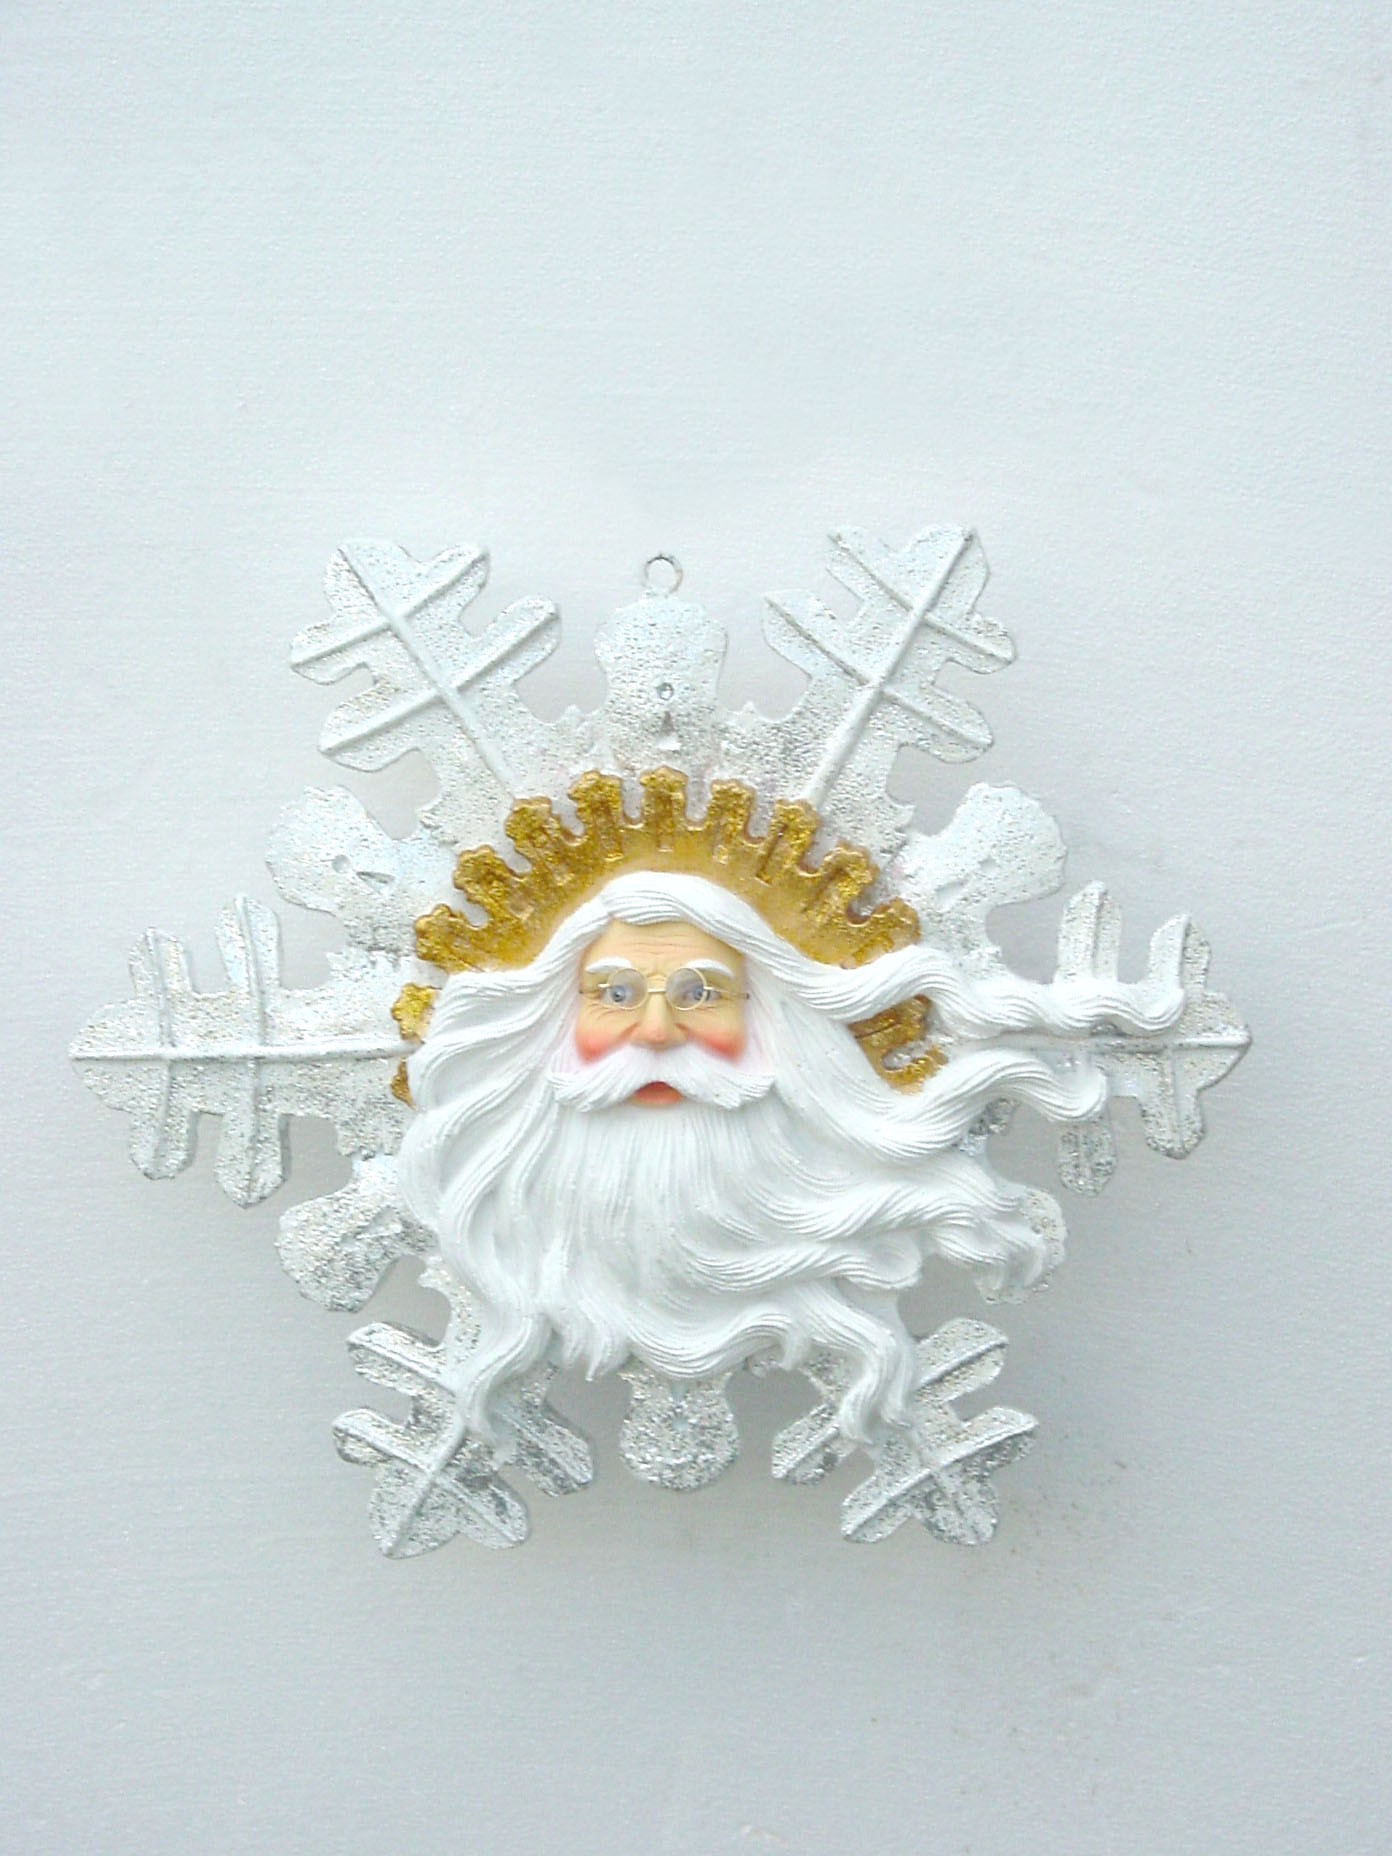 Weihnachtsmanngesicht mit Bart als Schneeflocke klein